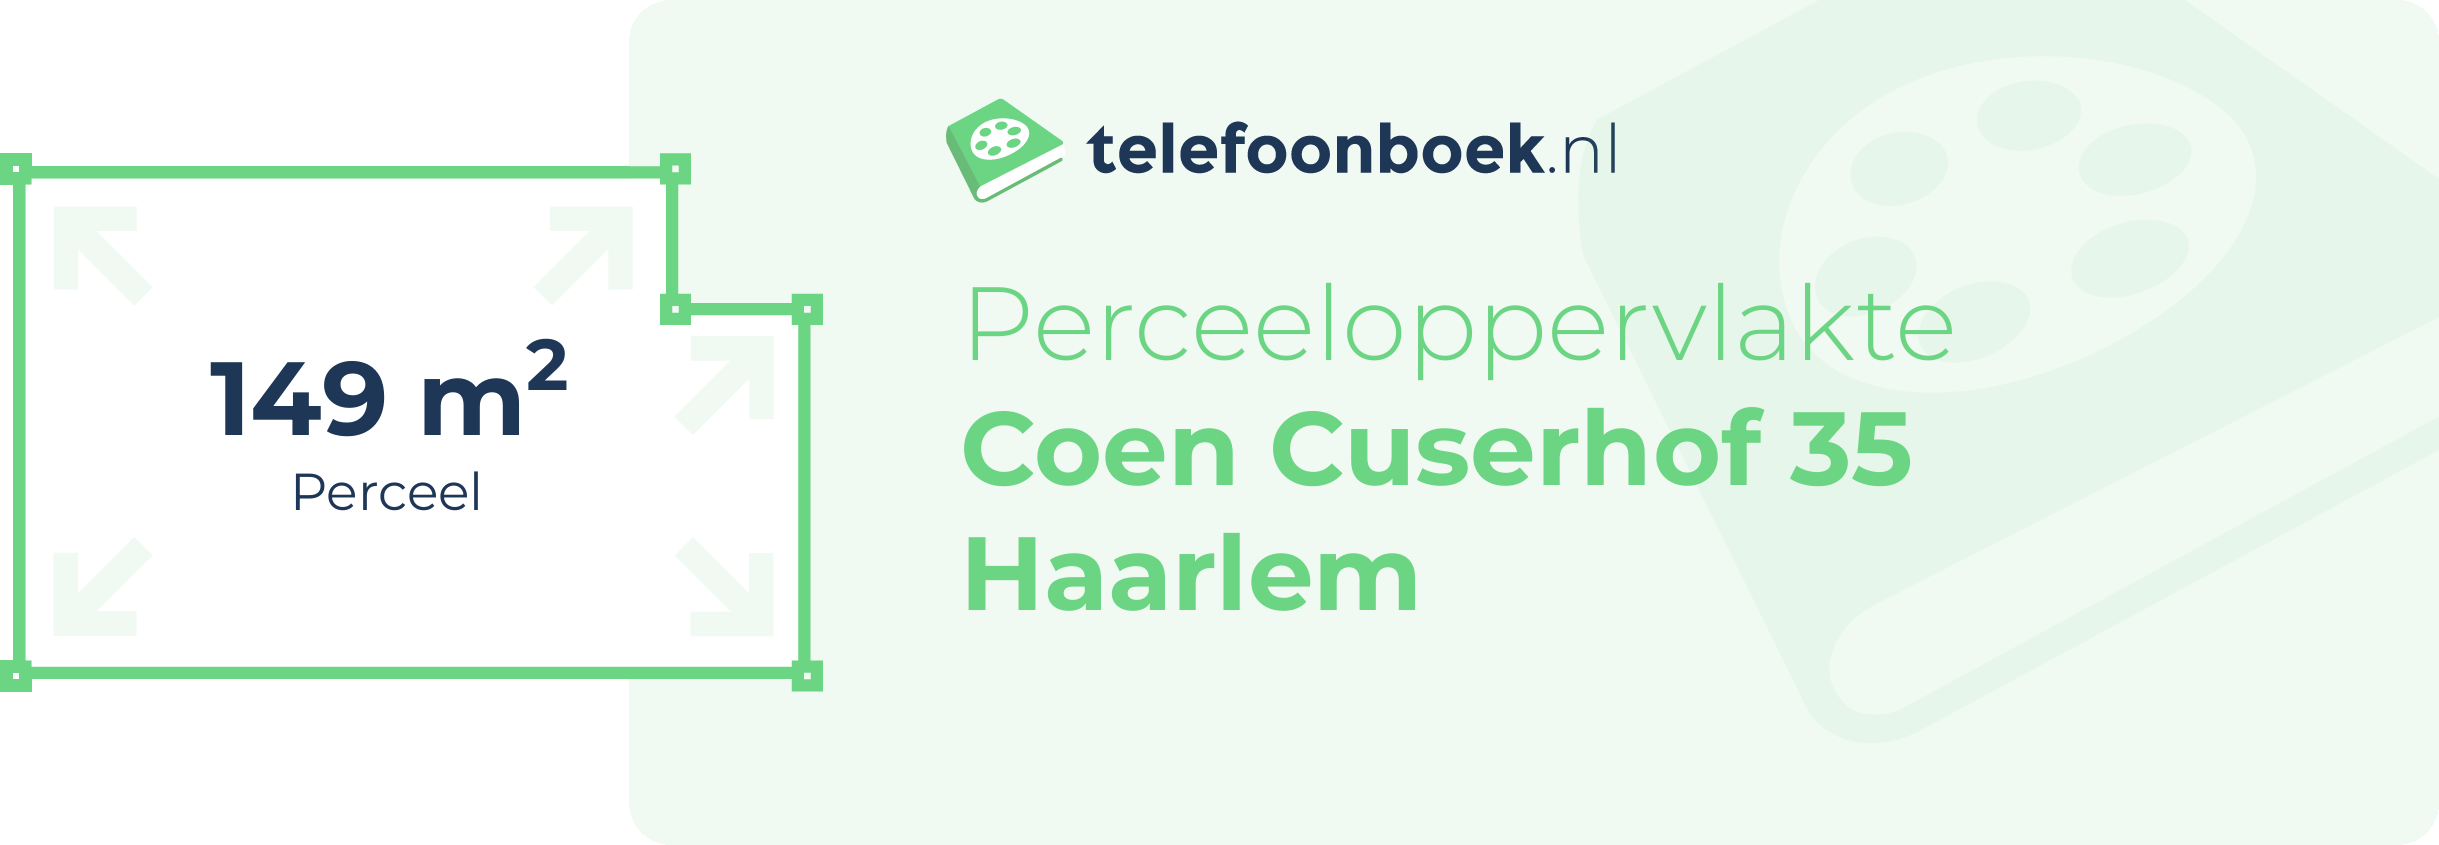 Perceeloppervlakte Coen Cuserhof 35 Haarlem